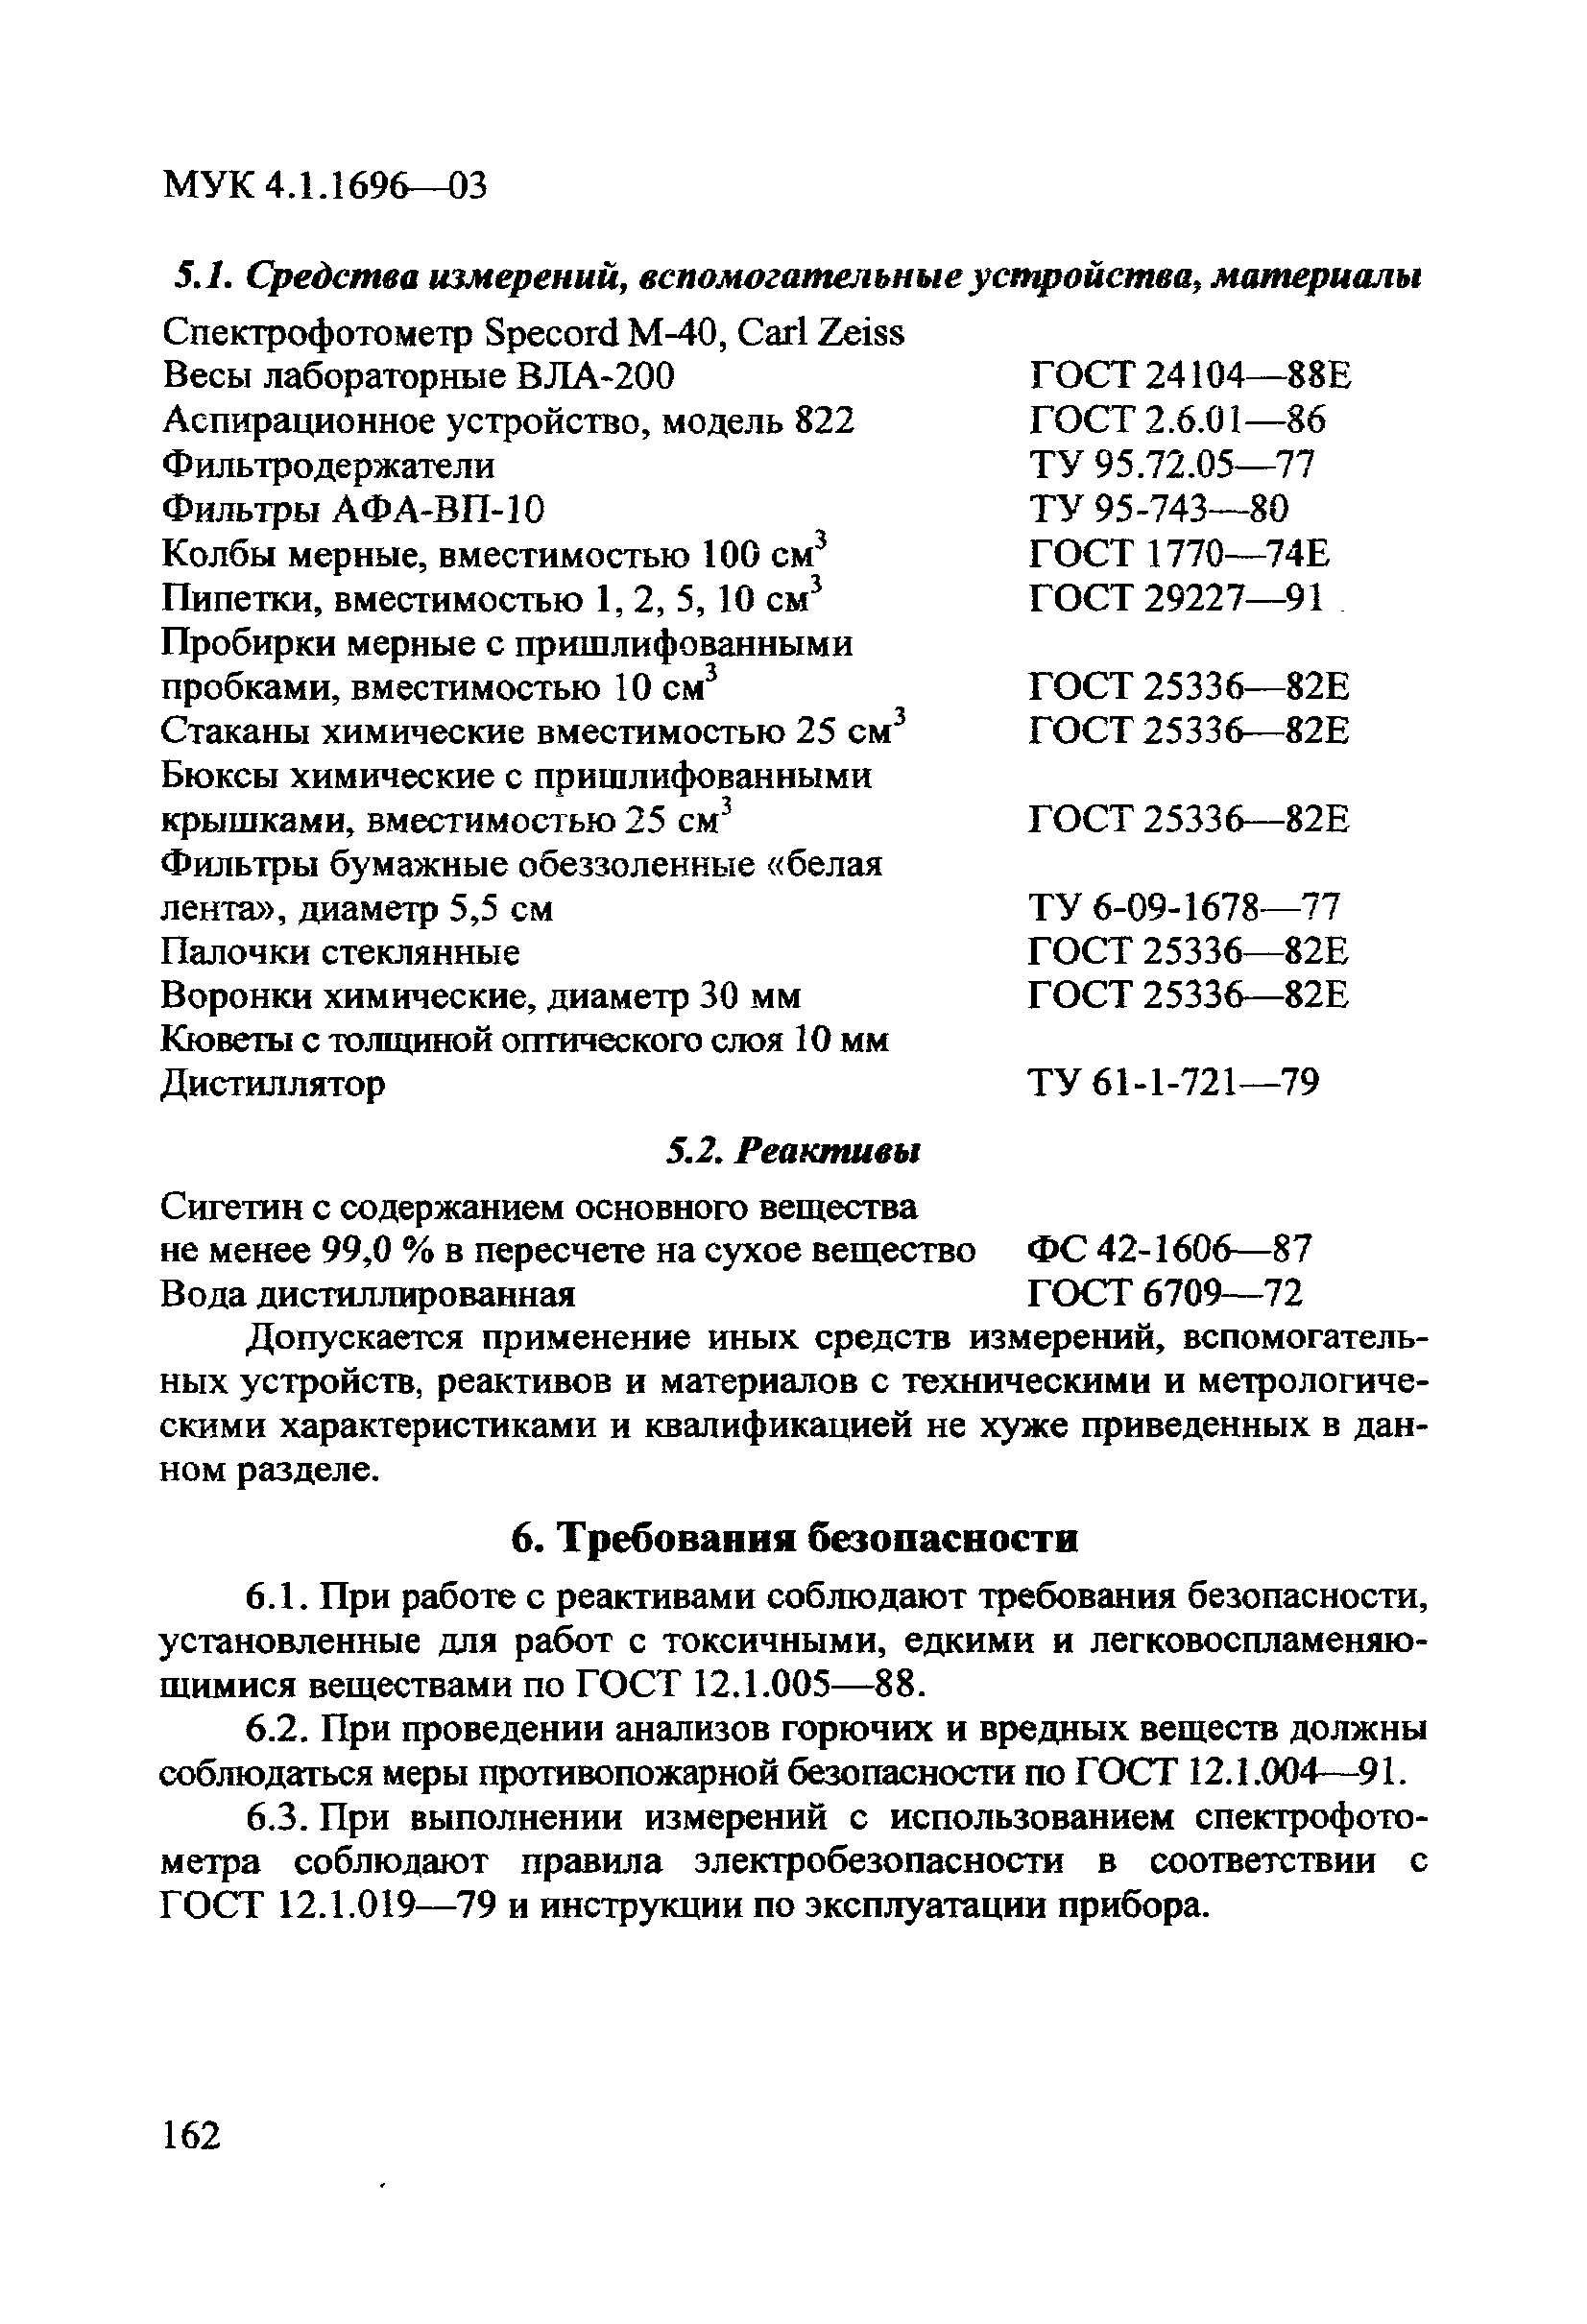 МУК 4.1.1696-03